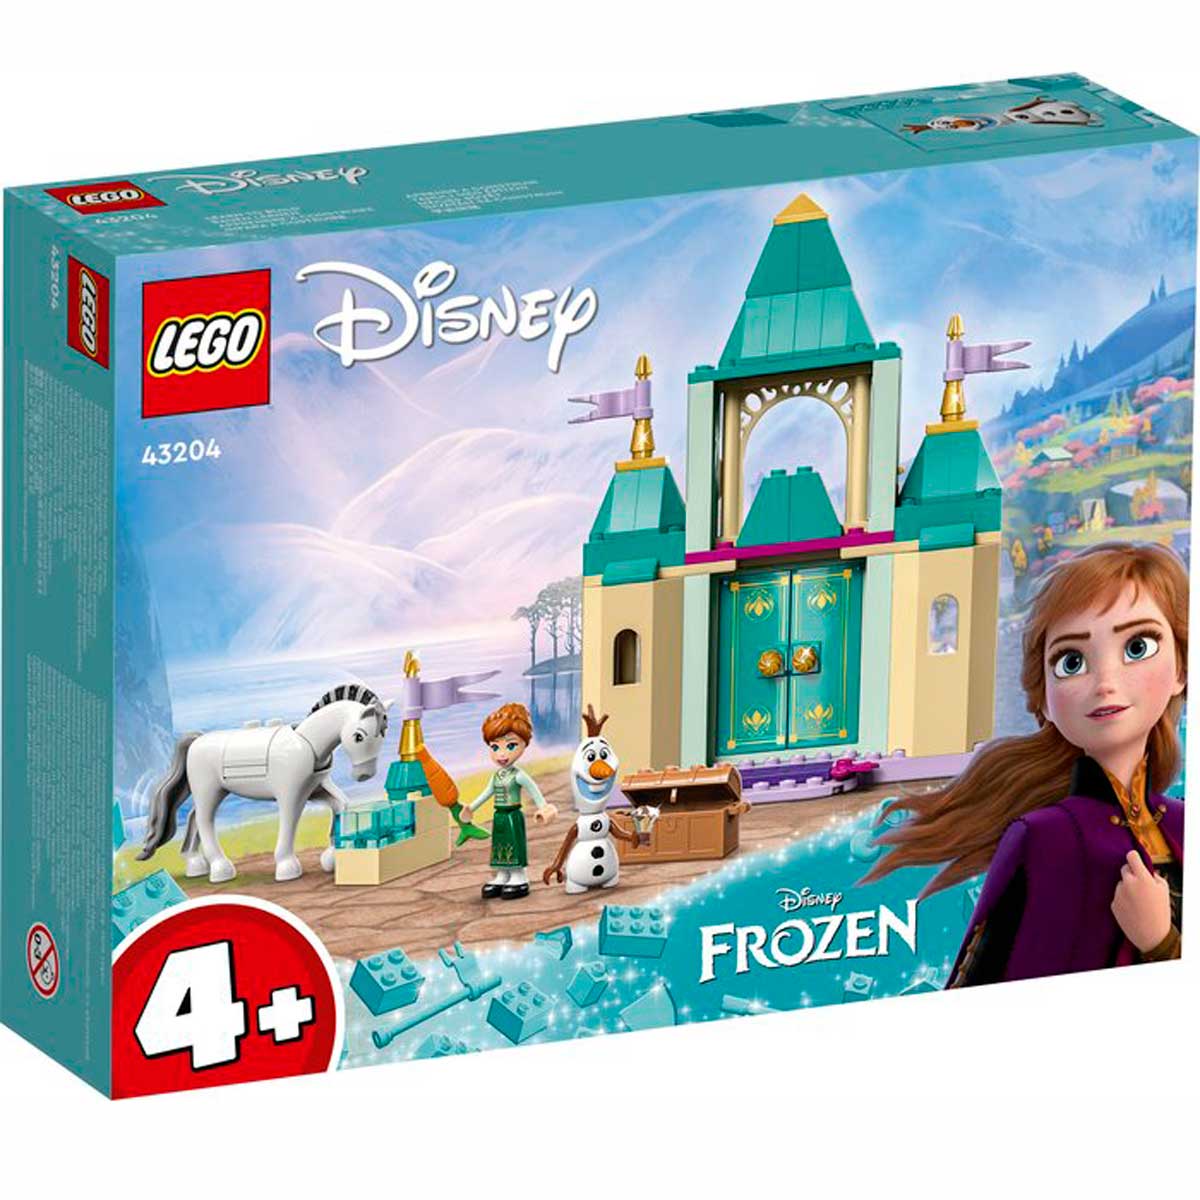 Laos Así llamado Christchurch Lego Frozen Castillo de Juegos de Anna y Olaf